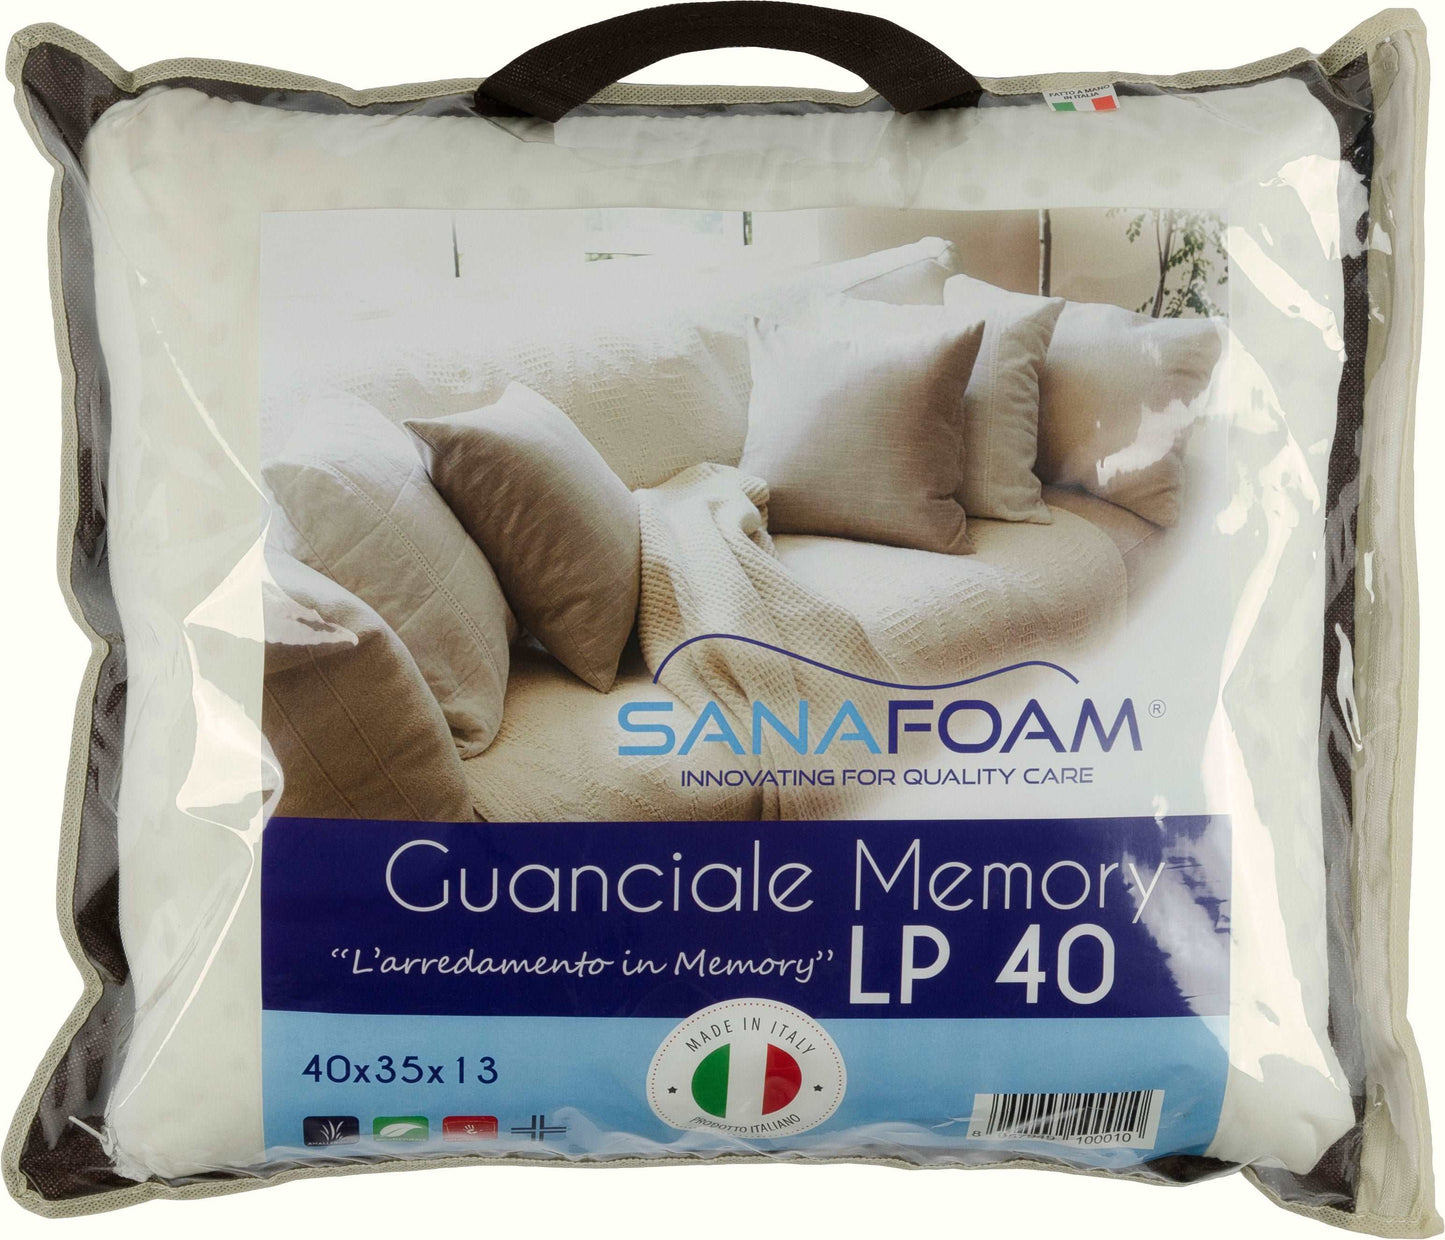 Guanciale Memory Foam - SANAFOAM - Confezione da 2 - I migliori prodotti Made in Italy da Fiera di Monza Shop - Solo 38€! Acquista subito su Fiera di Monza Shop!